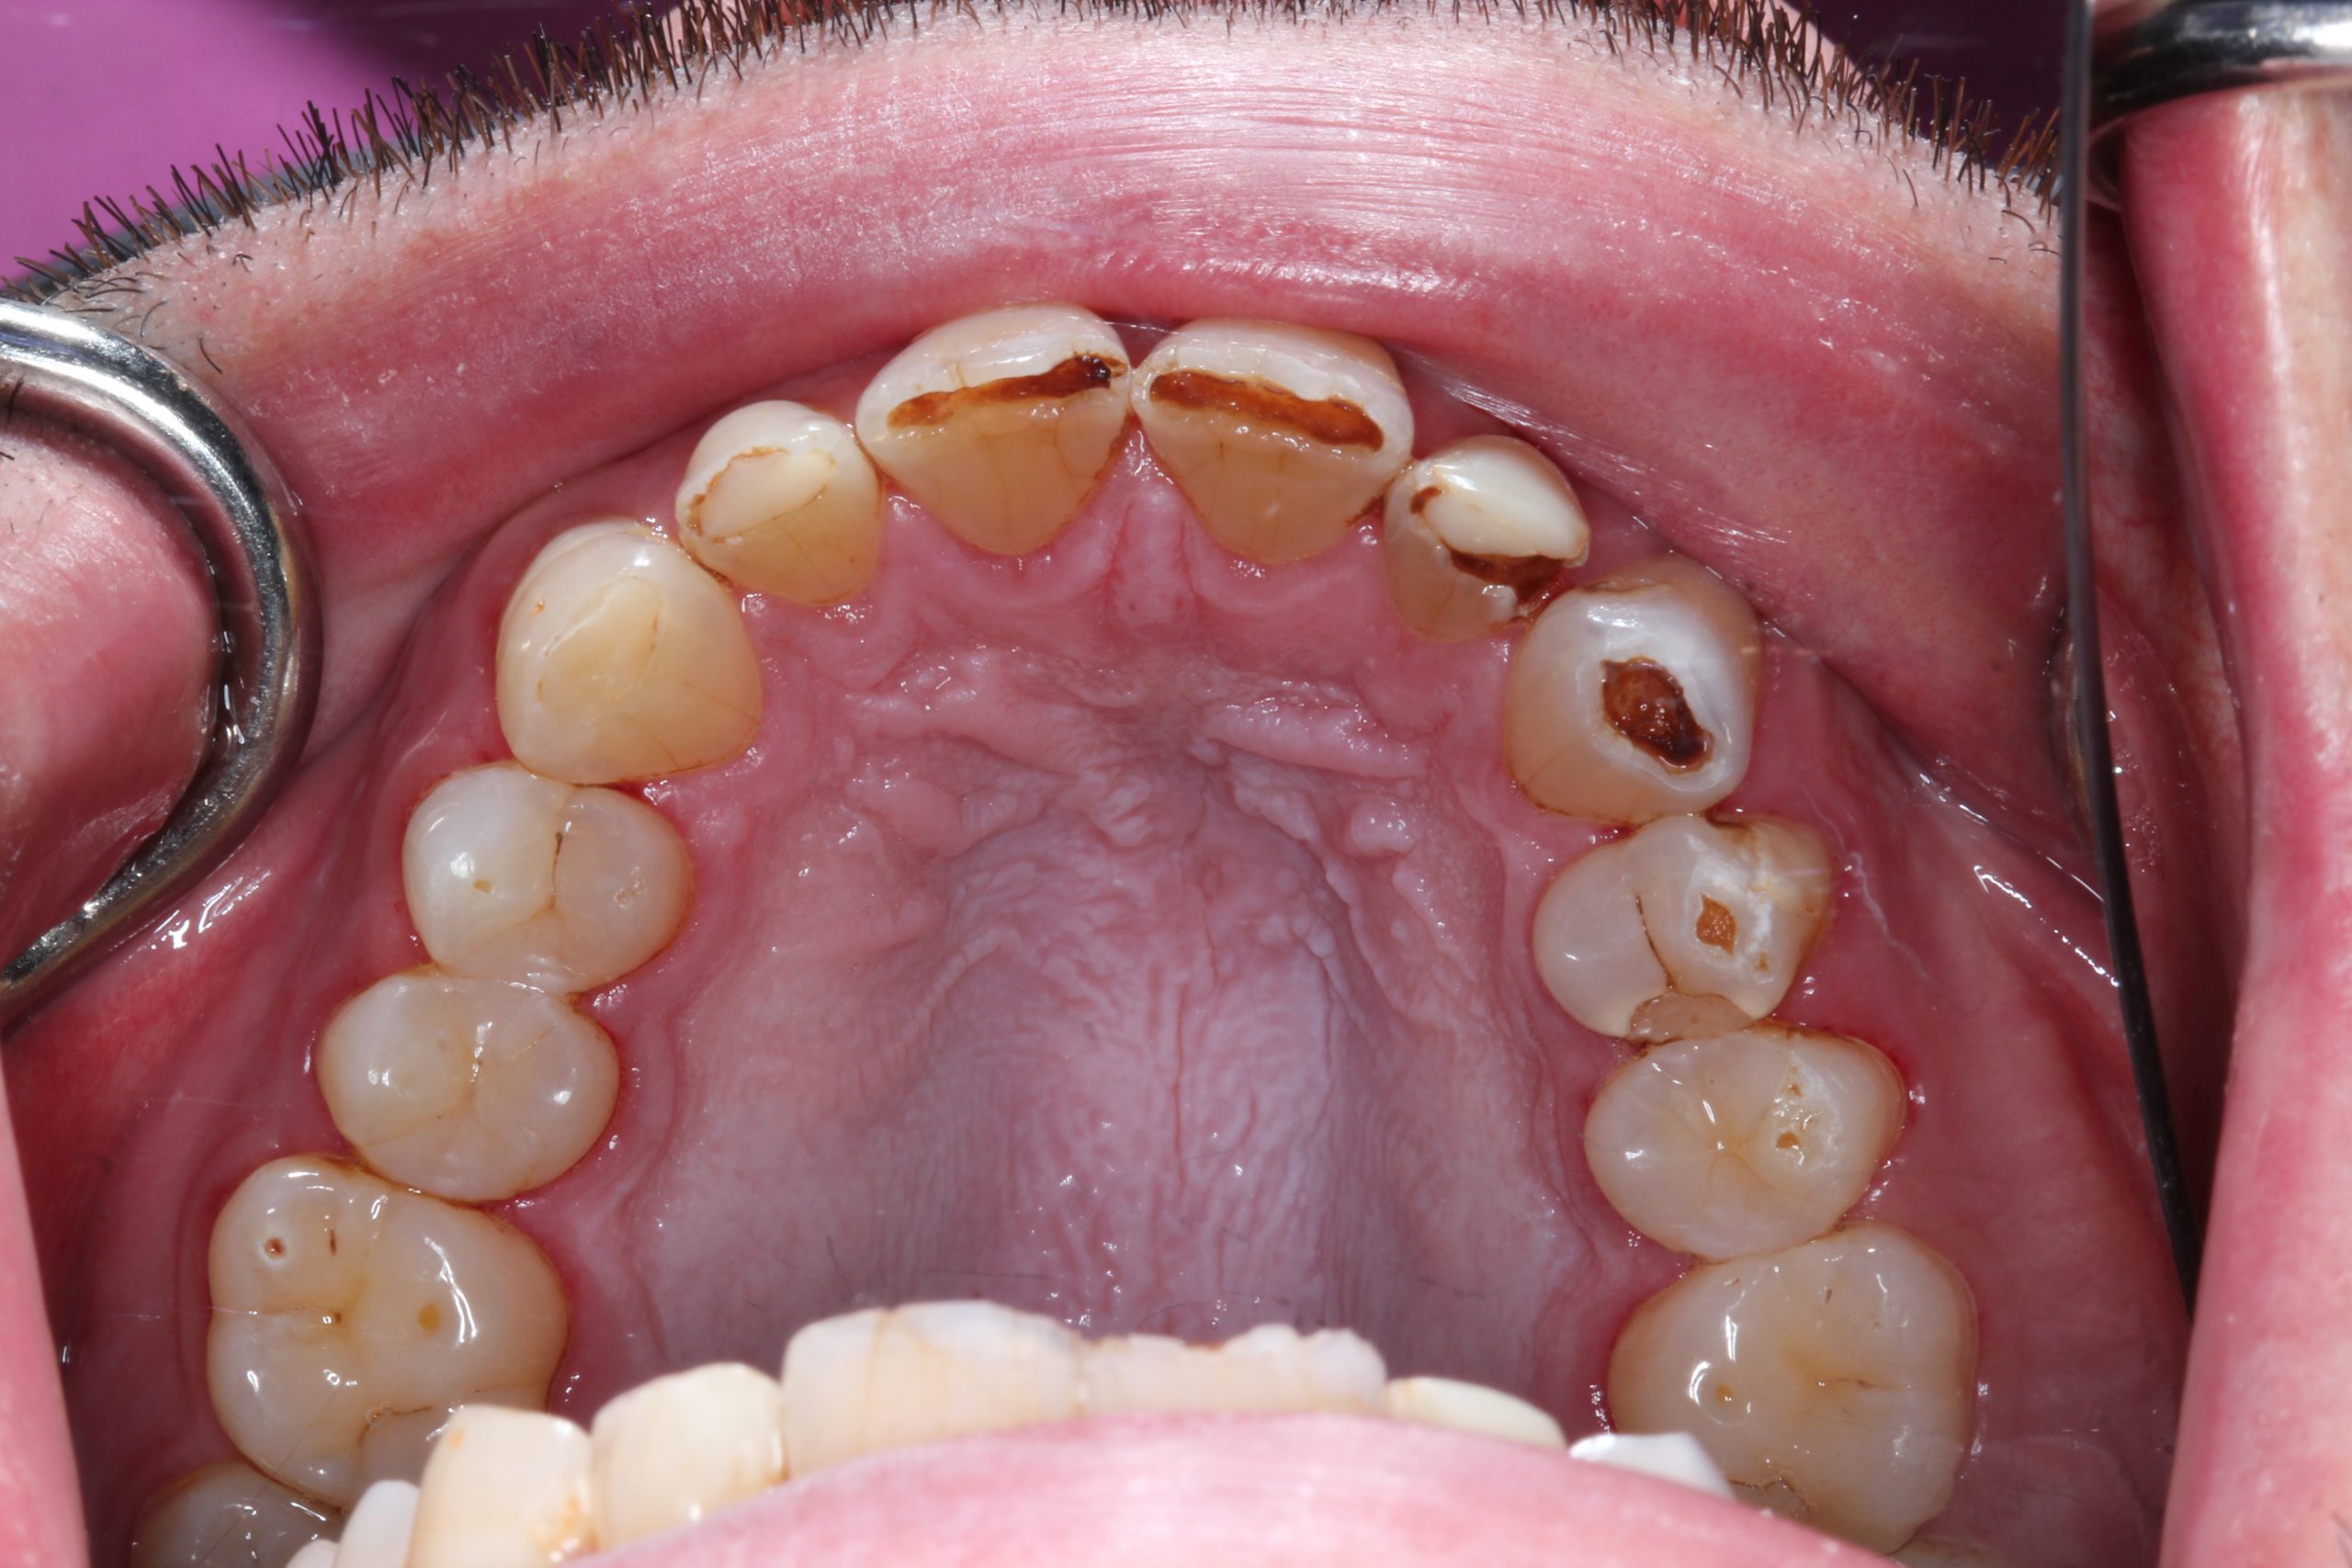 acid erosion on teeth case study photo